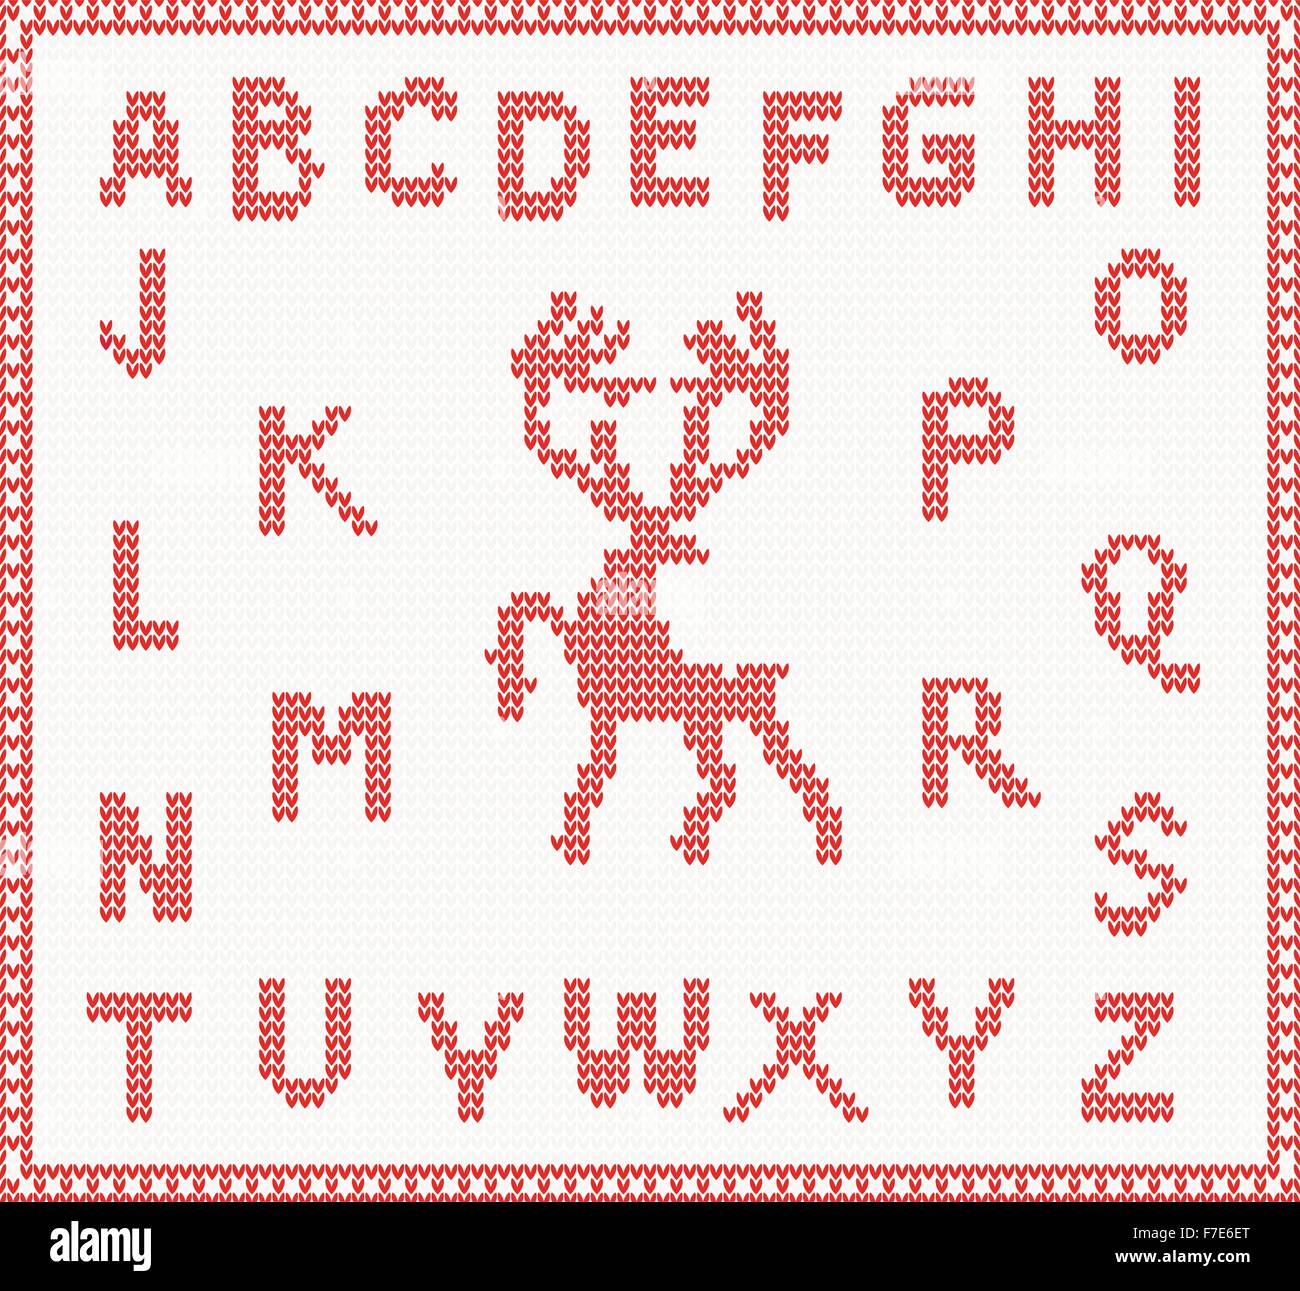 Tricot Noël Police avec Deer de couleur rouge. Vector illustration. Concept de Noël pour bannière, un placard, billboard ou site web Illustration de Vecteur